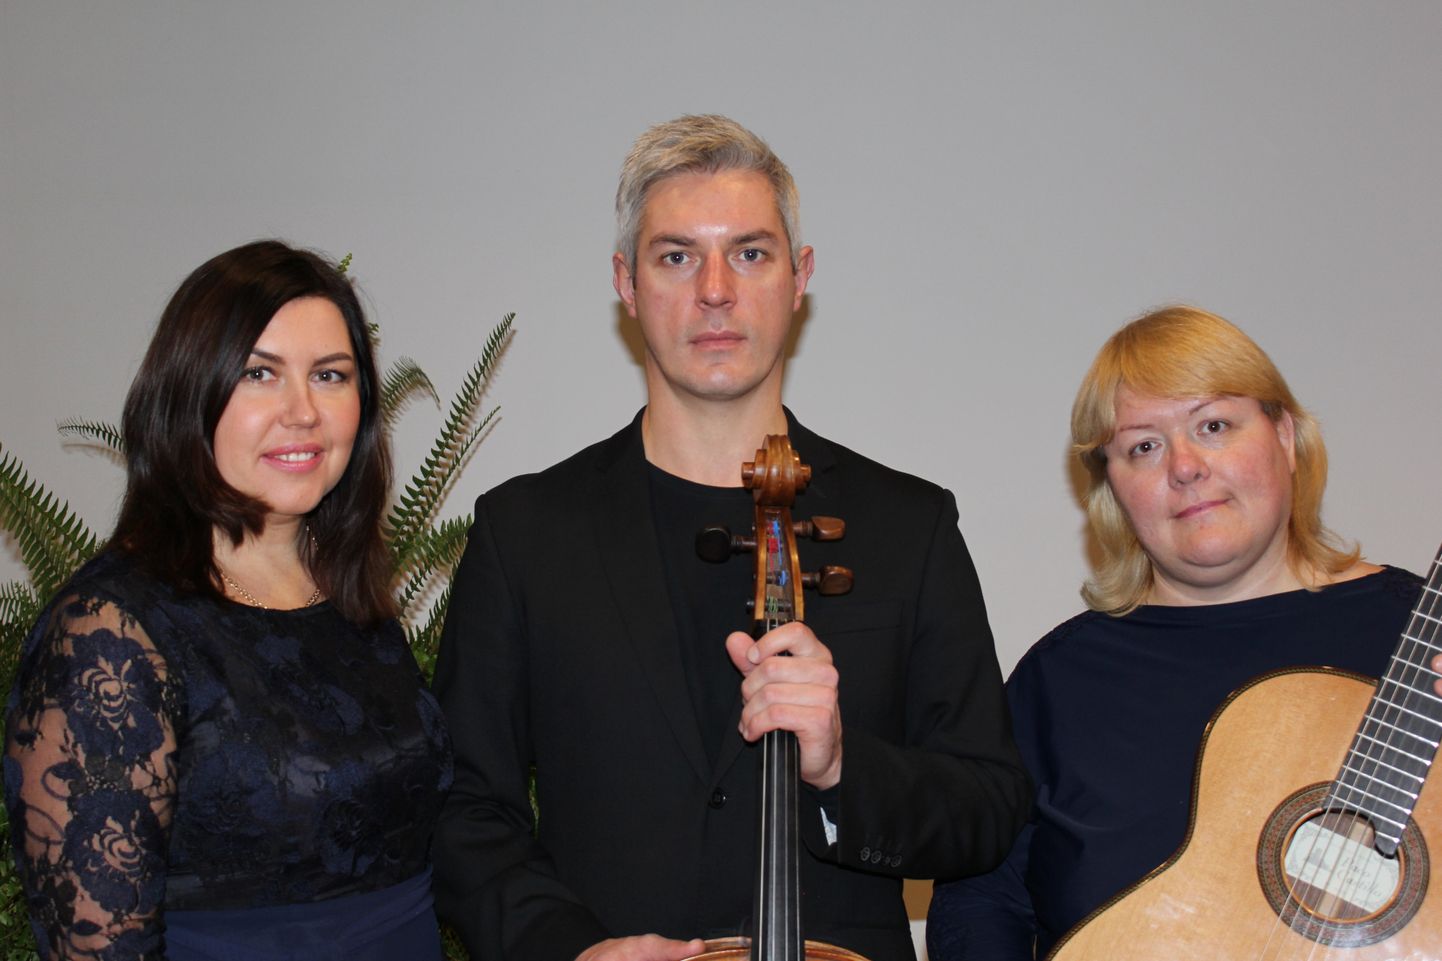 Eesti muusikutest koosnev uus trio esitab lääne ja eesti heliloojate teoseid.